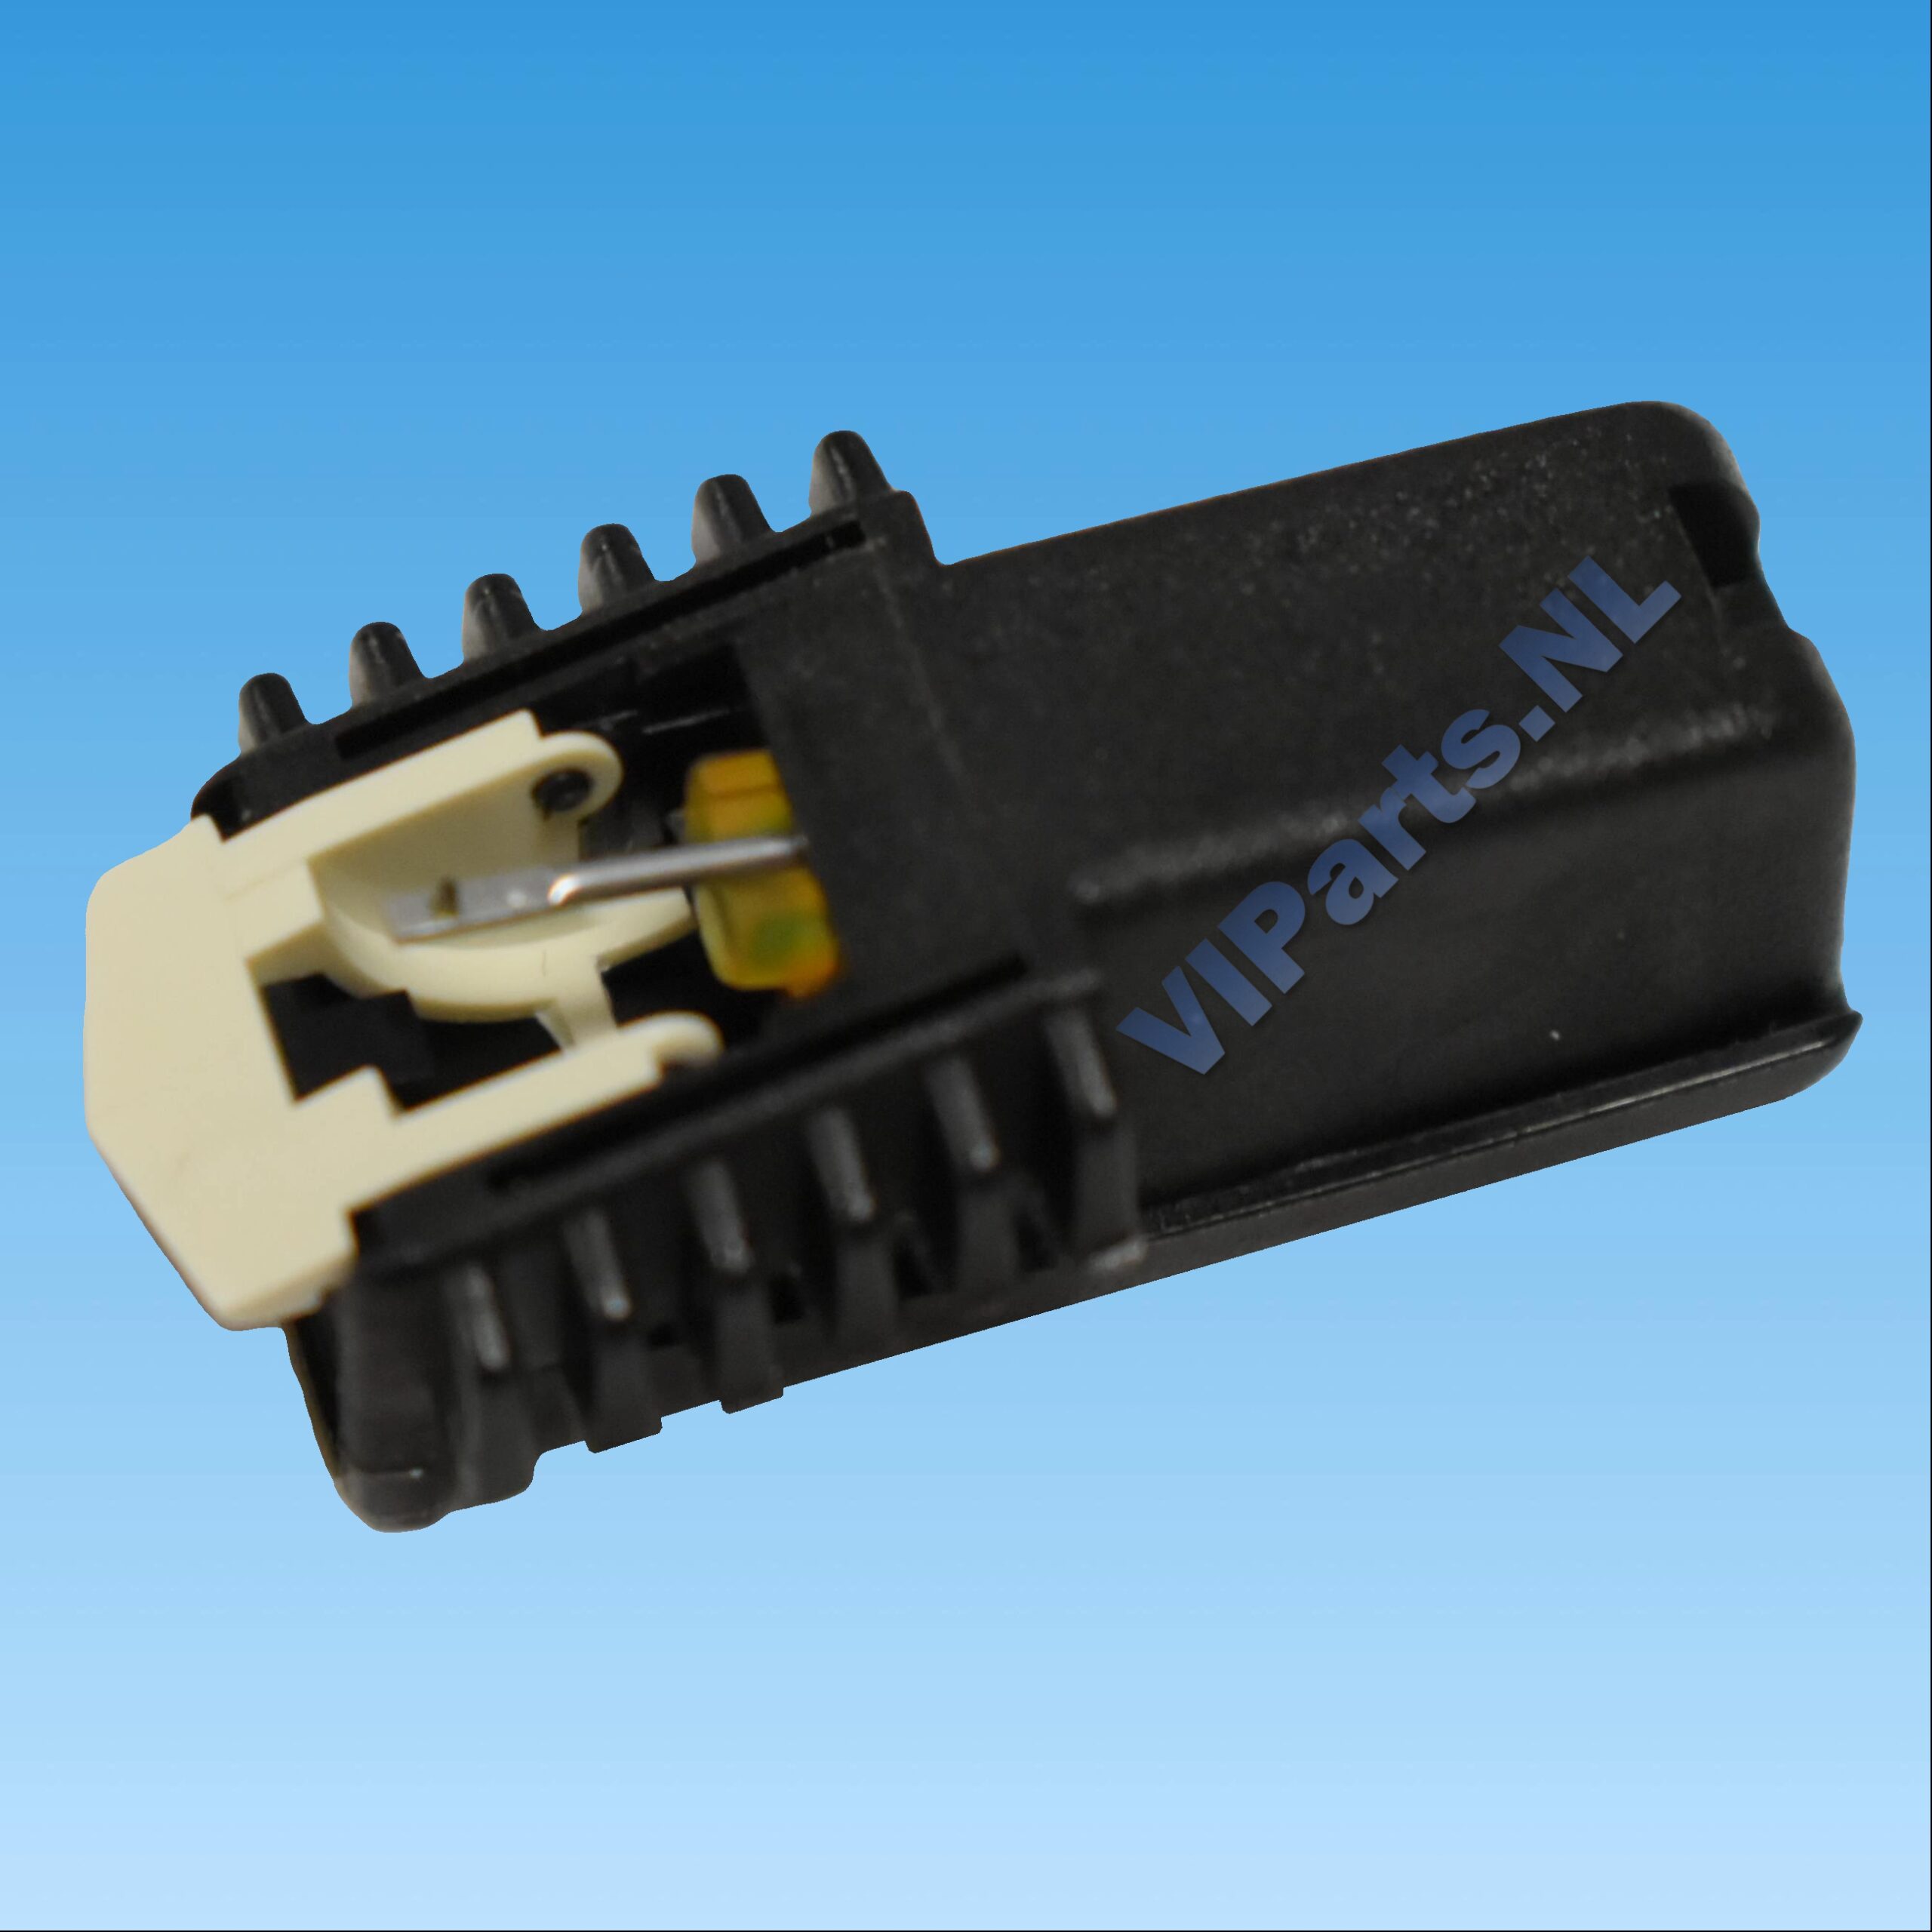 PHILIPS GP-214 / GP-215 / GP-314 / GP-315 Cartridge Stylus ~VIParts.NL~